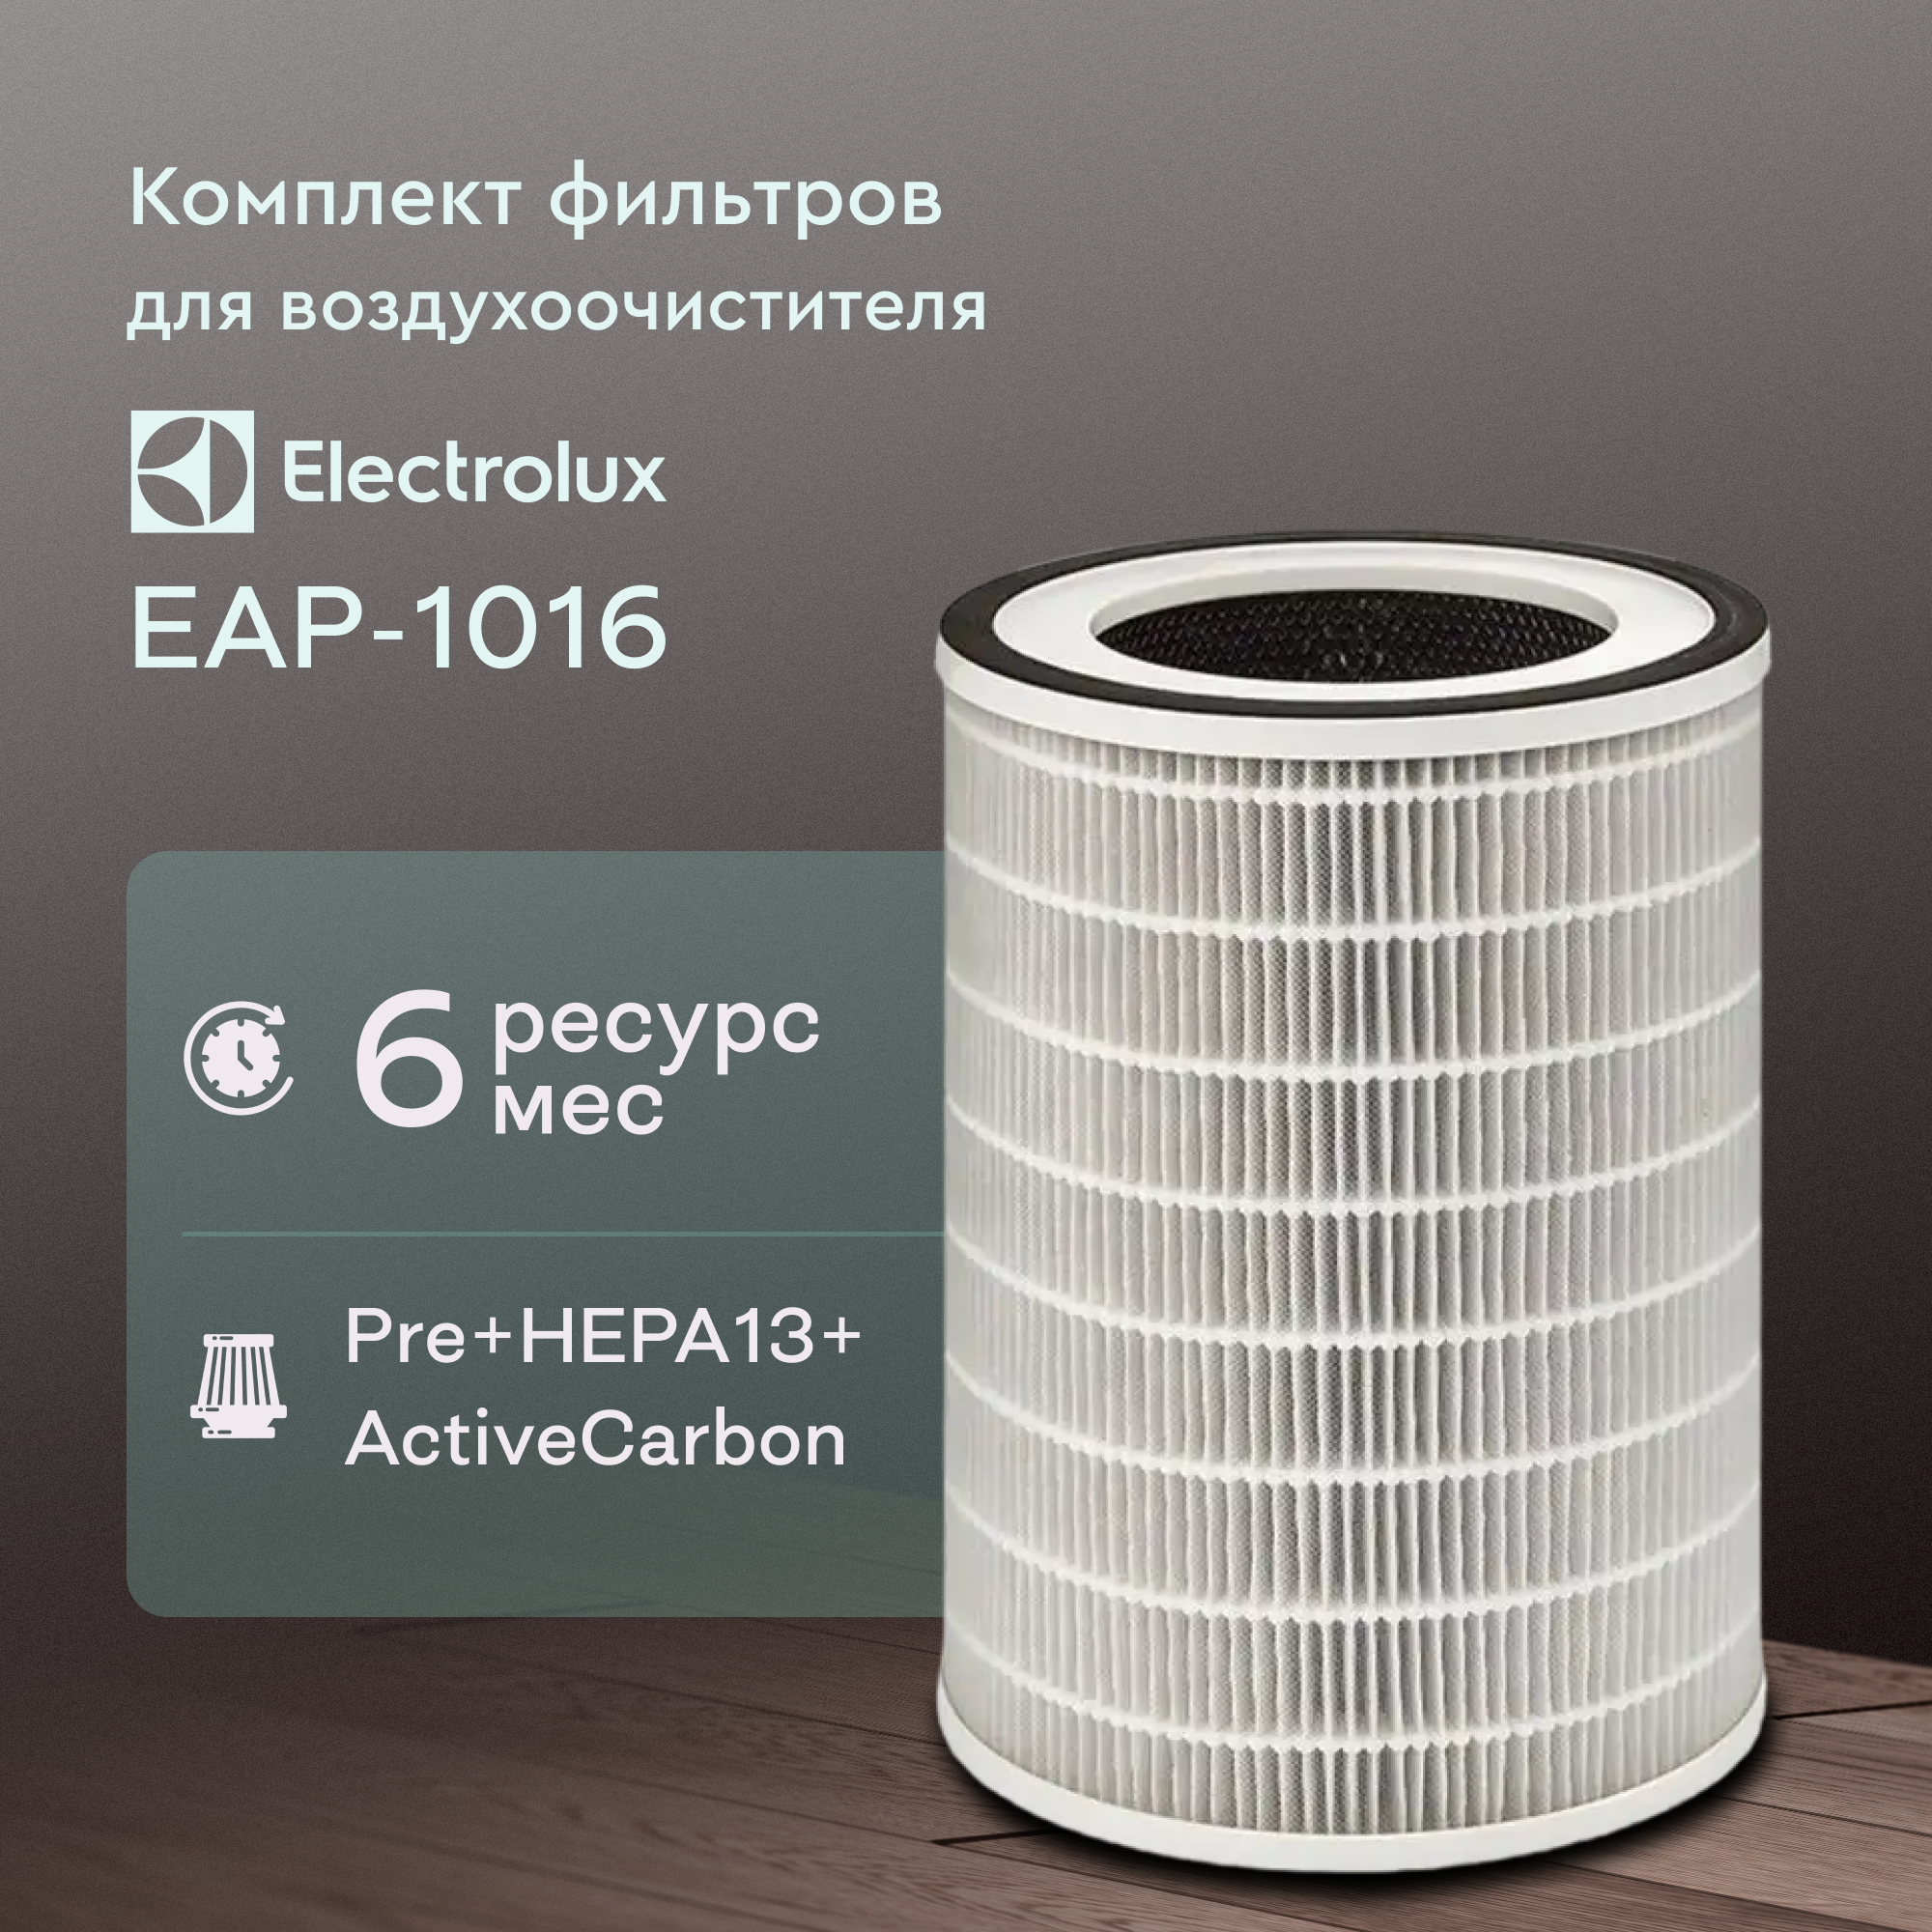 Комплект фильтров FAP-1016 для воздухоочистителя Electrolux EAP-1016 18 шт.